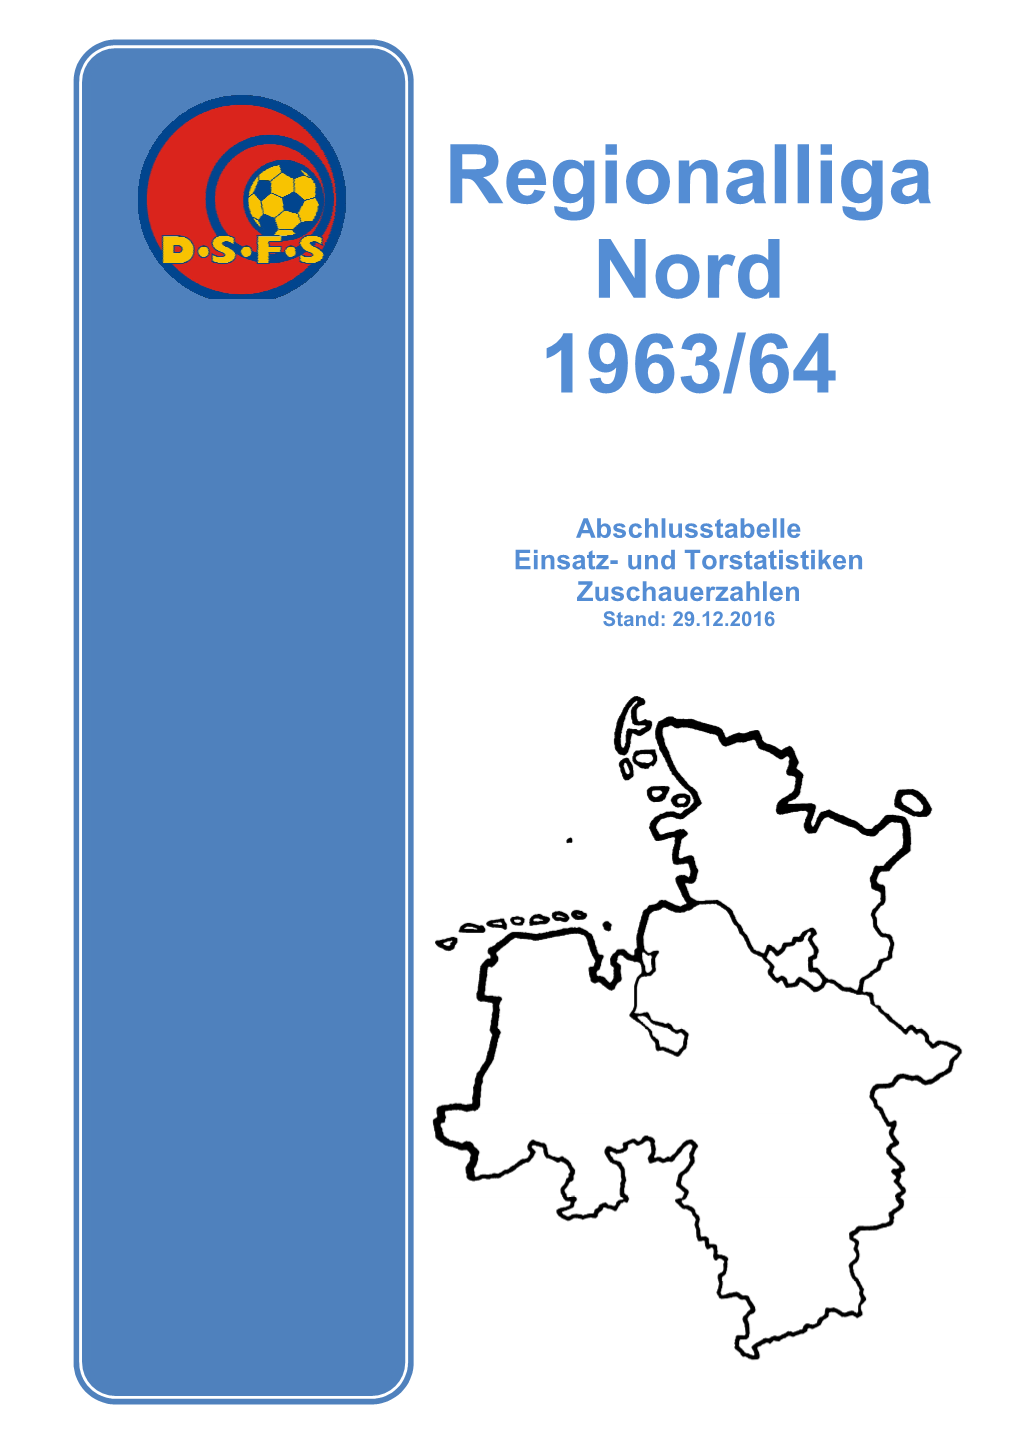 Regionalliga Nord 1963/64